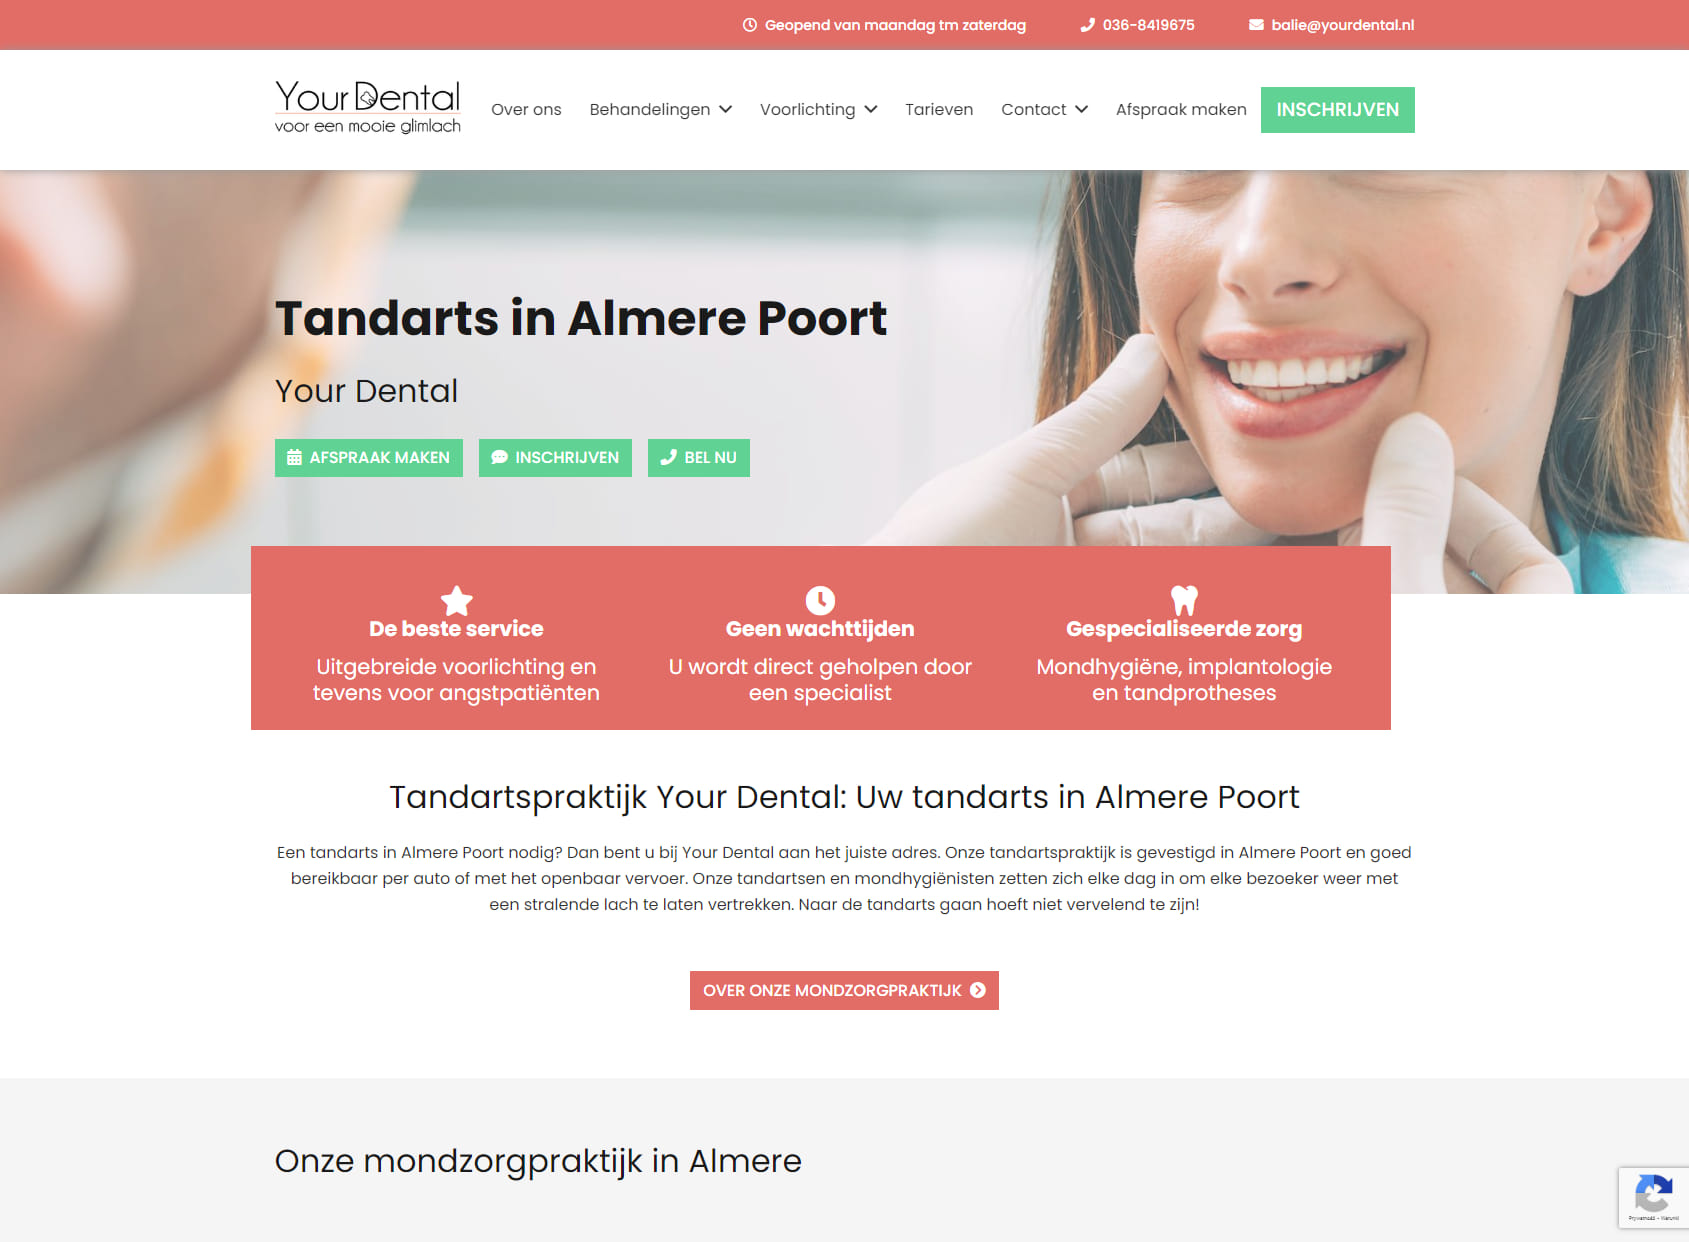 Your Dental | Tandartspraktijk Almere Poort